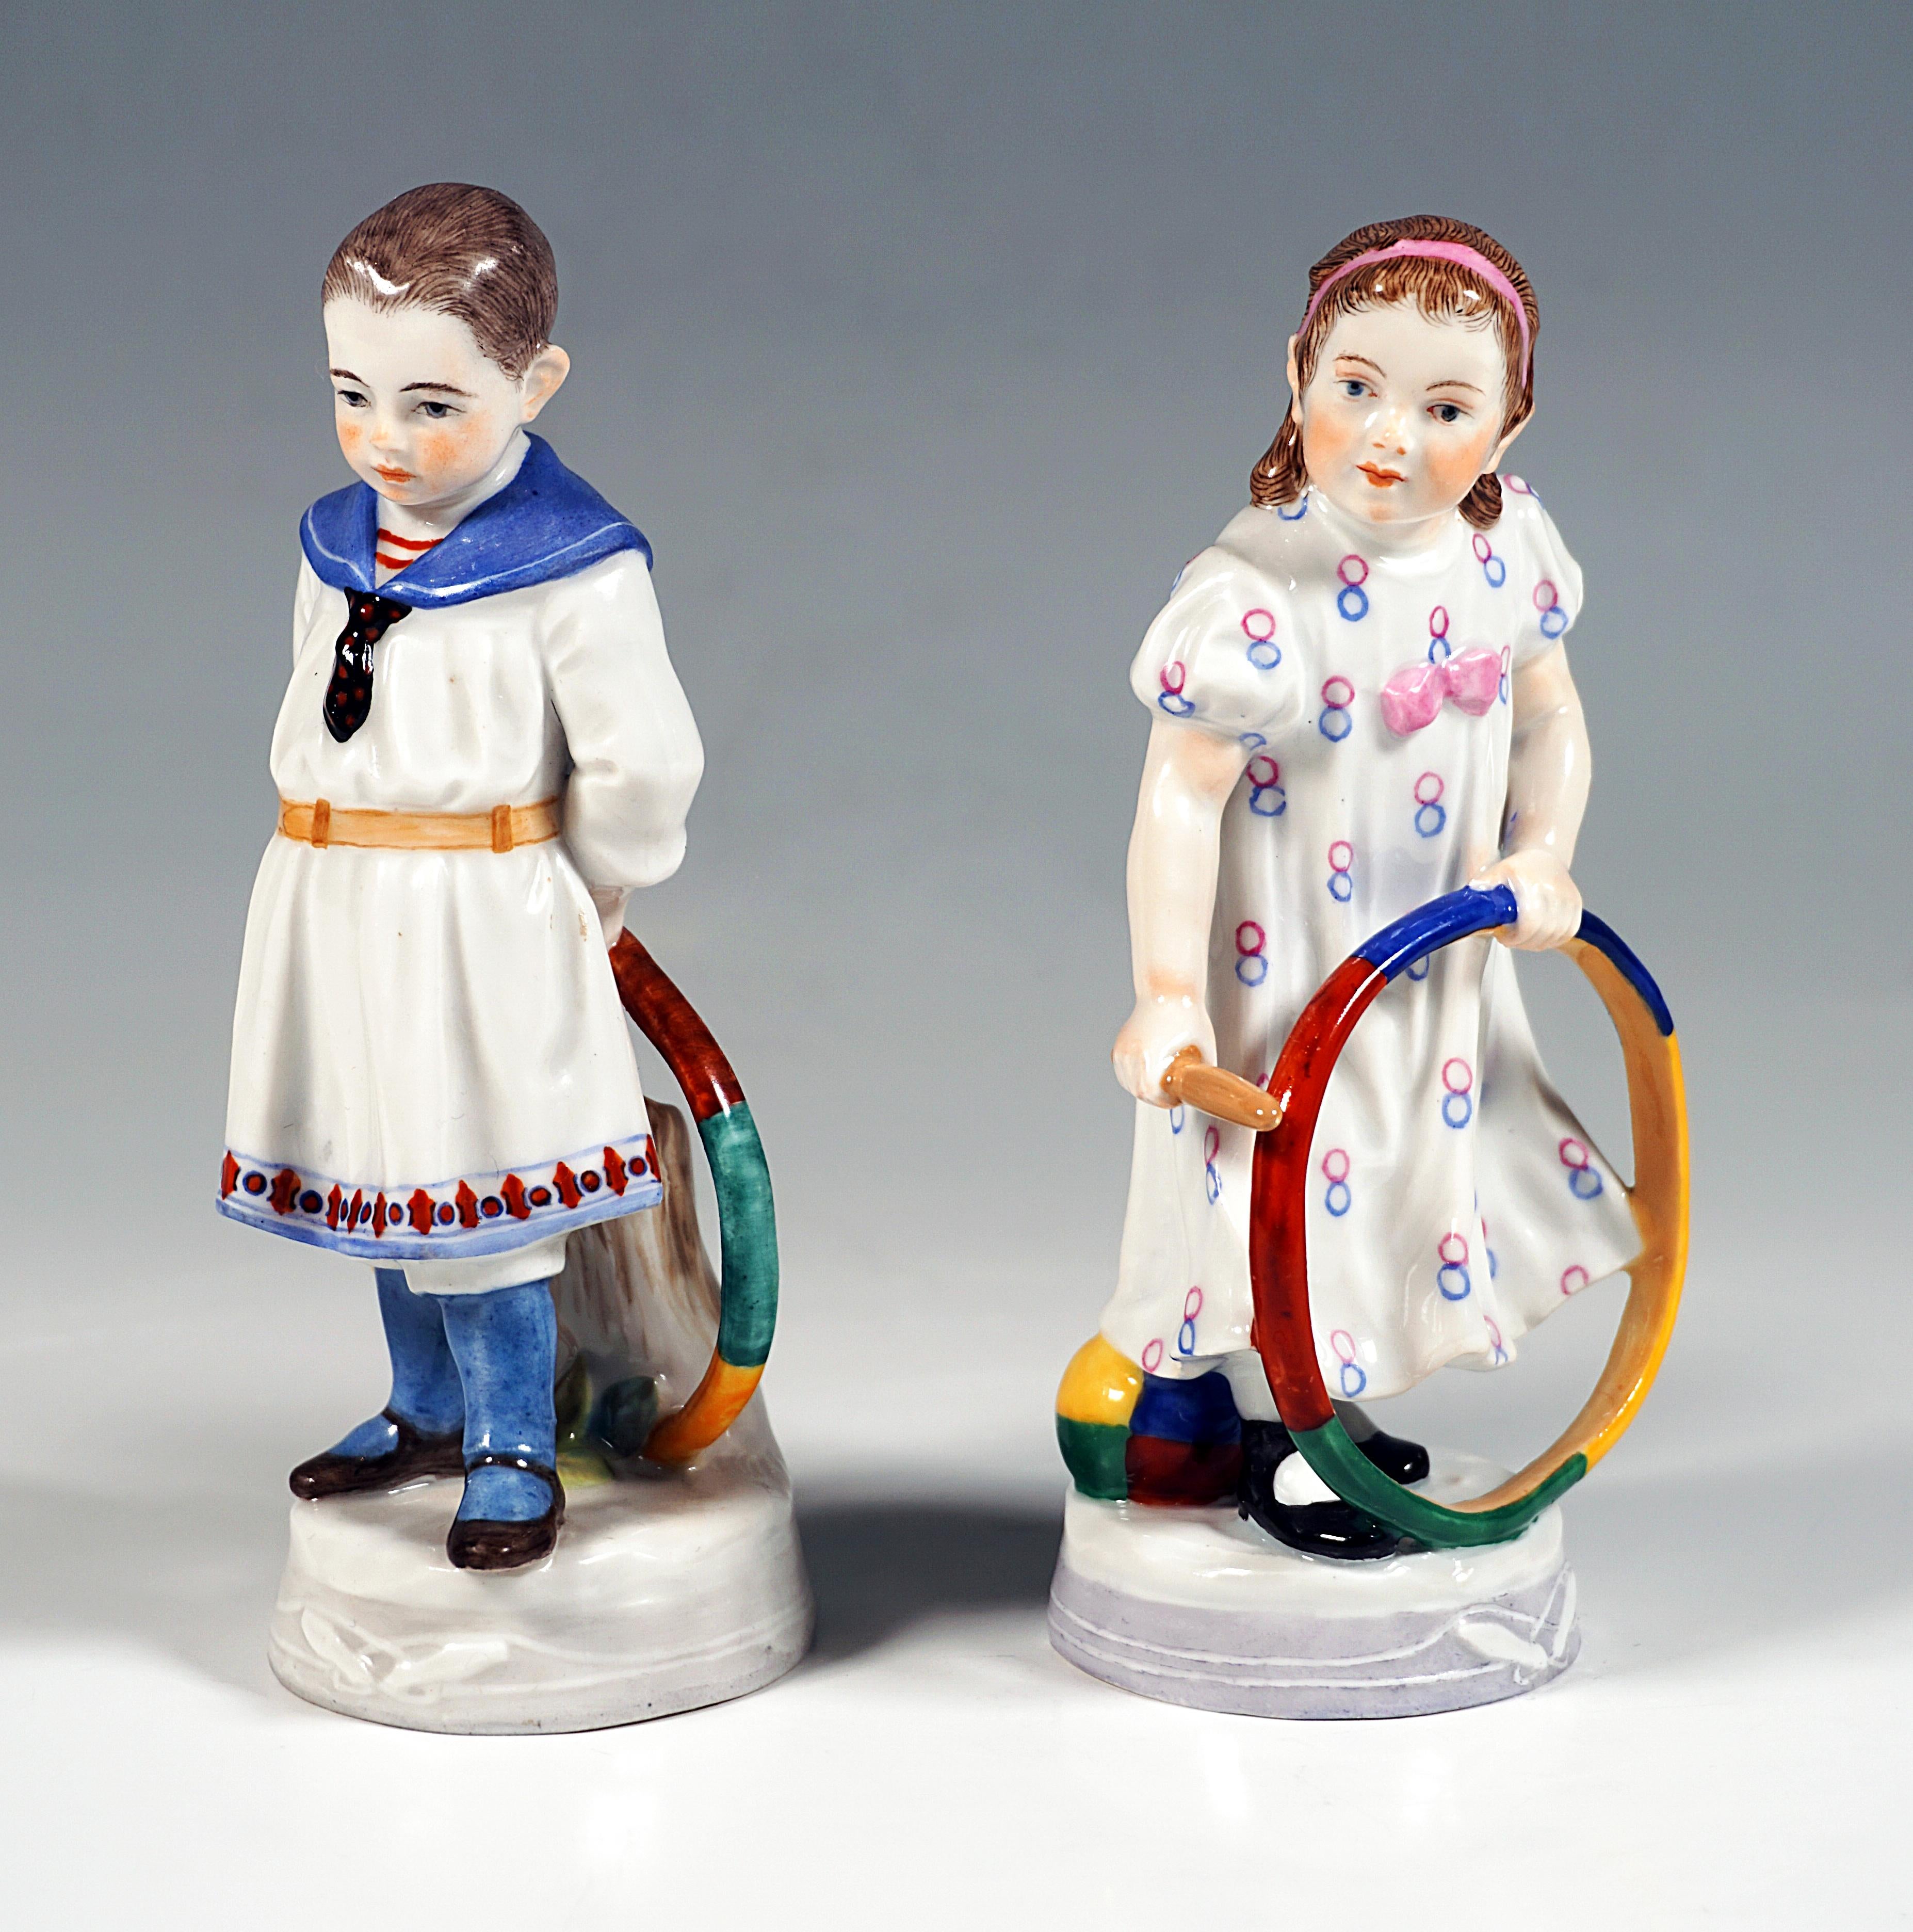 Très rares figurines en porcelaine de Meissen Art Nouveau :
Deux enfants avec des cerceaux colorés :
Le garçon debout en costume de marin, tenant le cerceau des deux mains derrière lui, debout sur le sol, soutenu par derrière par un tronc d'arbre,